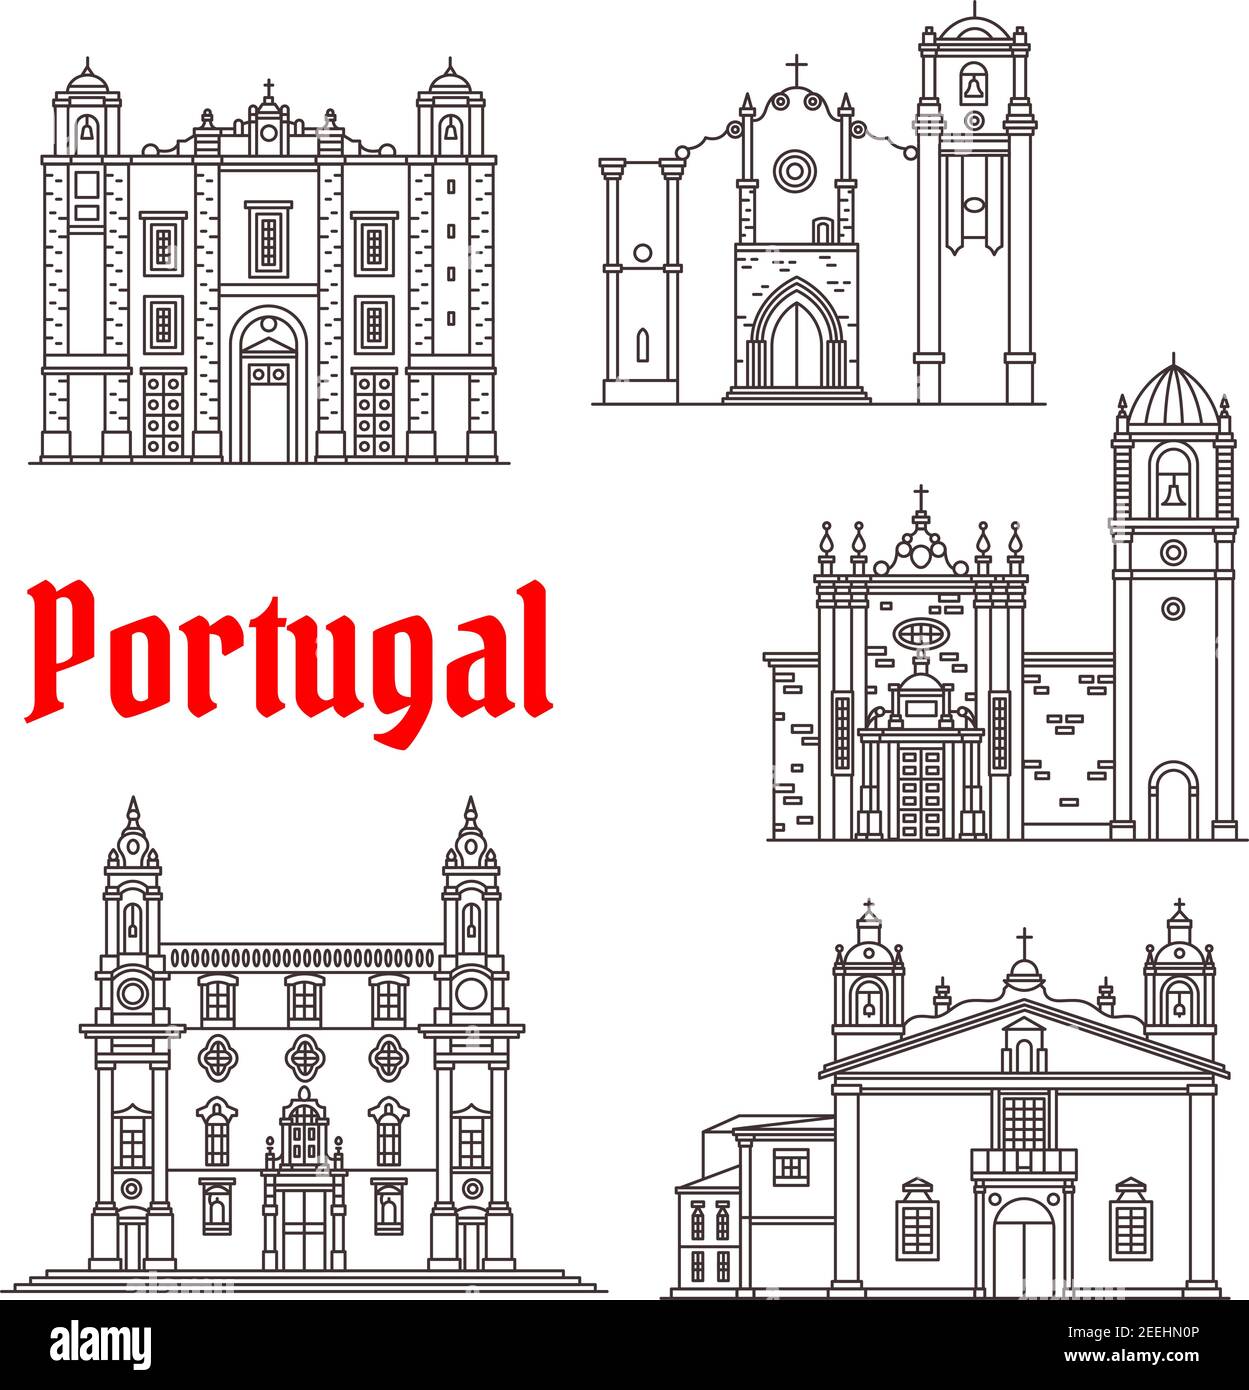 Portugal Wahrzeichen und Portugiesisch berühmte Architektur Gebäude. Vektor isolierte Ikonen und Fassaden von Santo Antonio und San Antao Kirche, Carmo Tempel Stock Vektor